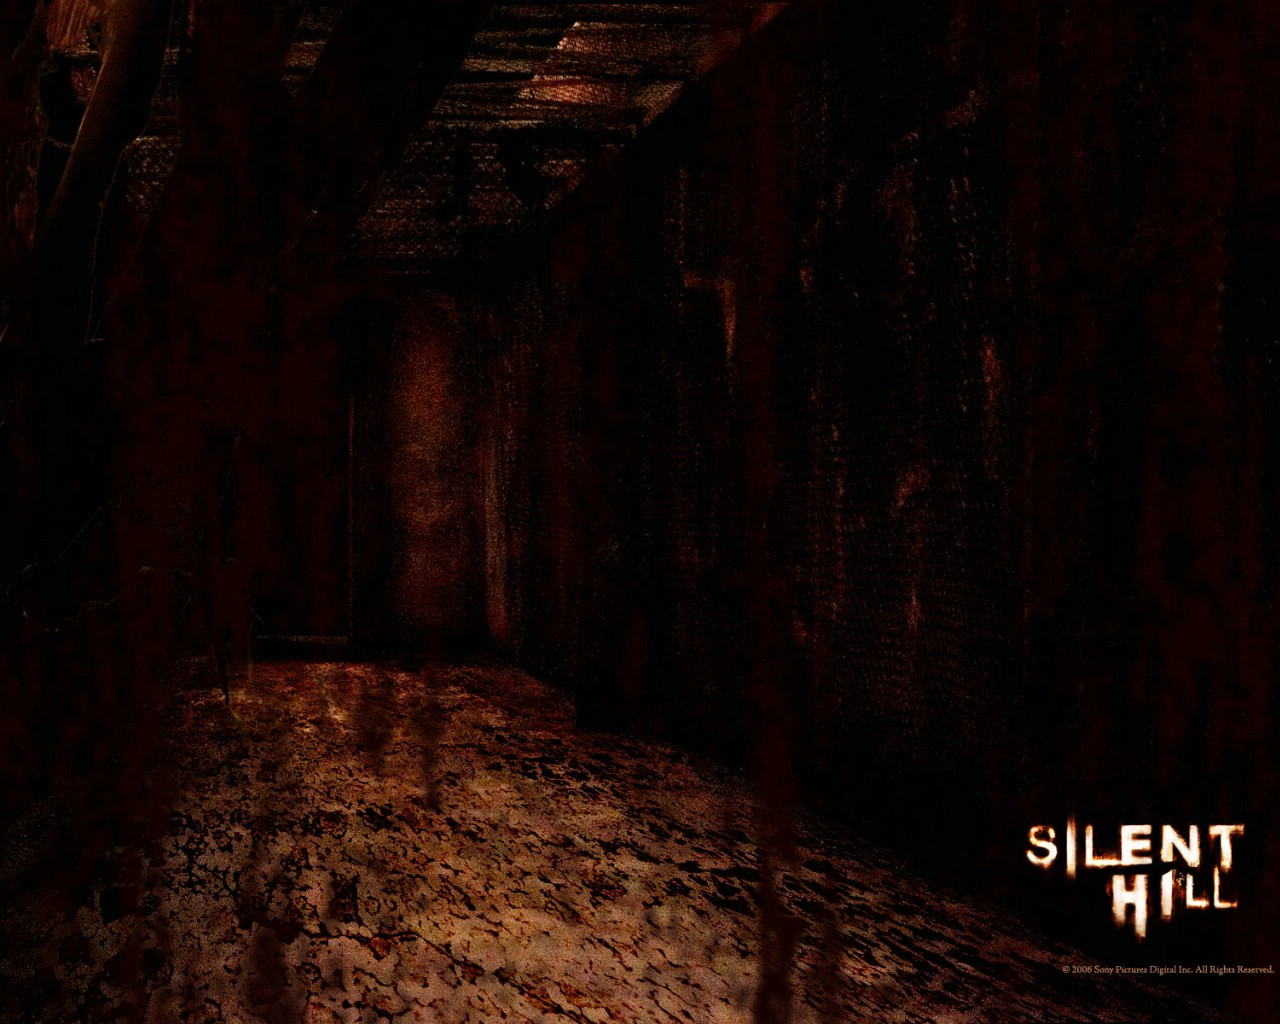 壁纸1280x1024 寂静岭 电影壁纸 Movie wallpaper Silent Hill 2006壁纸 恐怖电影《寂静岭 Silent Hill》壁纸 恐怖电影《寂静岭 Silent Hill》图片 恐怖电影《寂静岭 Silent Hill》素材 影视壁纸 影视图库 影视图片素材桌面壁纸